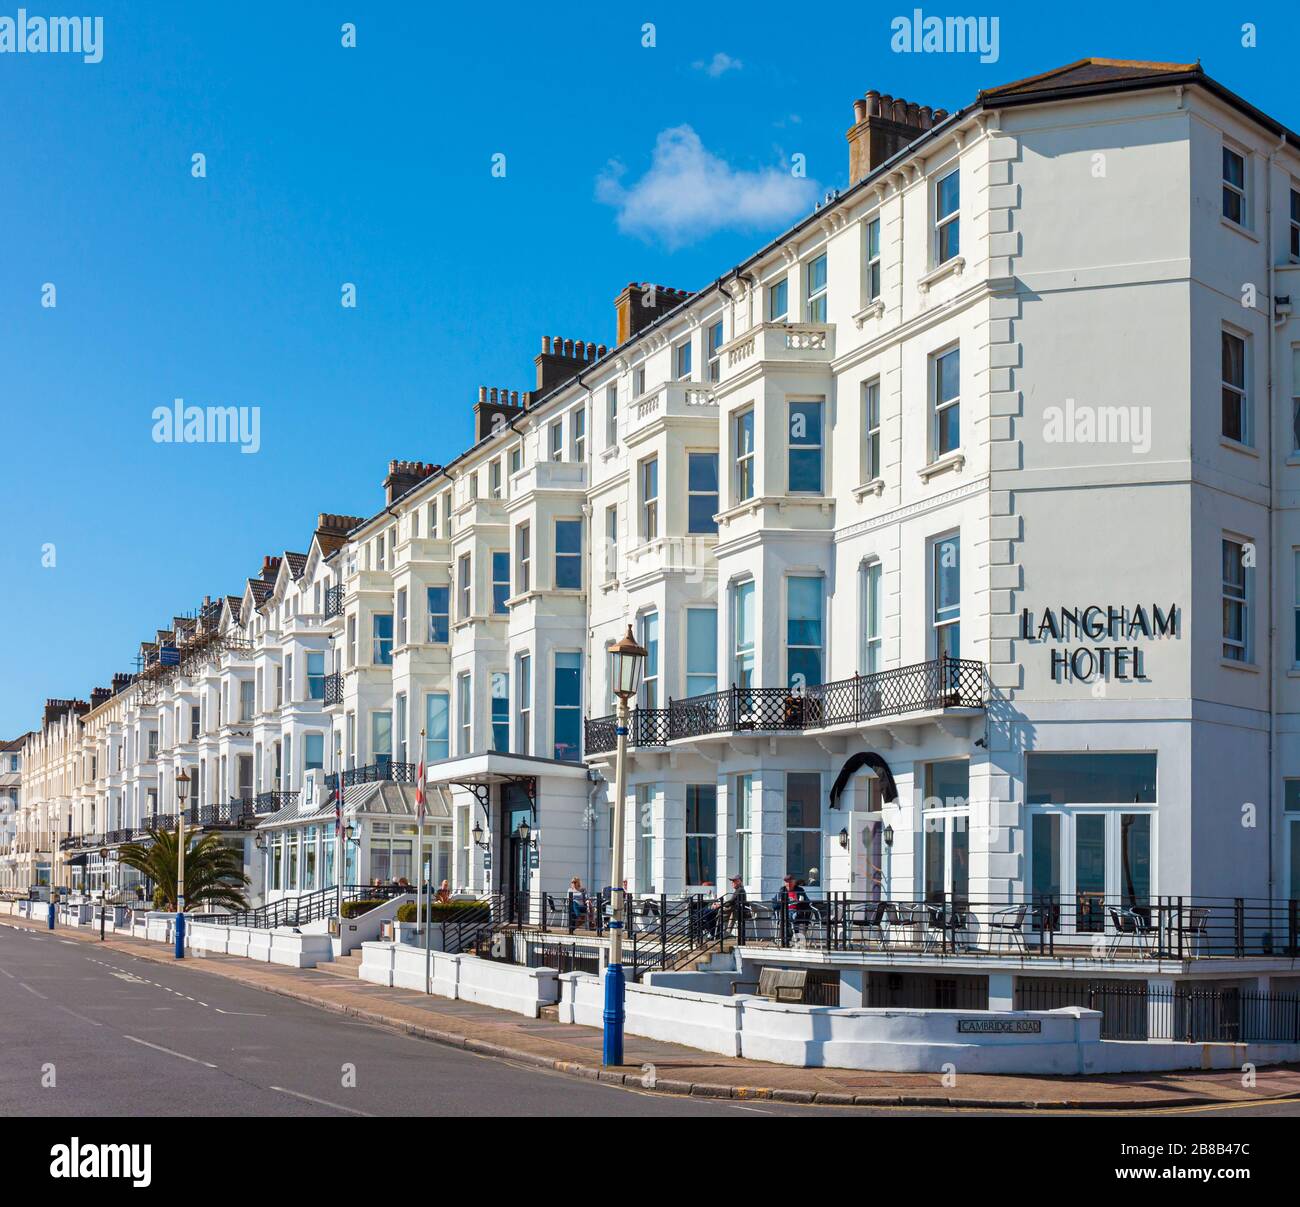 Rangée d'hôtels en terrasses victoriens, Royal Parade, Eastbourne, East Sussex, Angleterre, Royaume-Uni. Banque D'Images